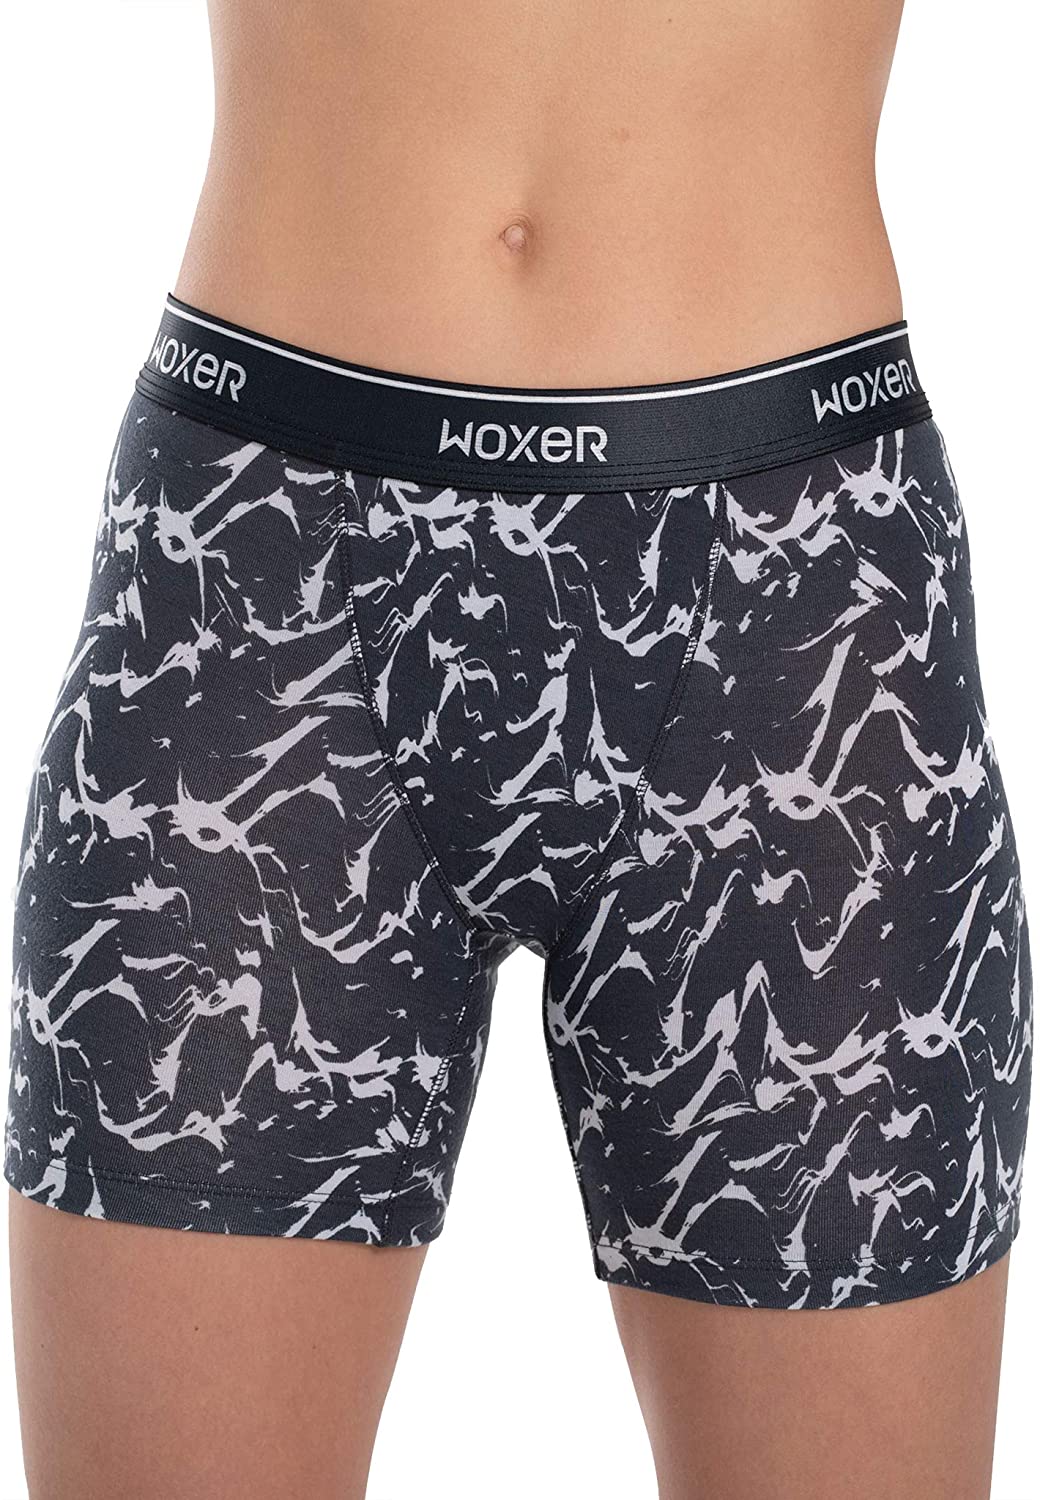 Buy Woxer Womens Boxer Briefs Underwear, Baller 5” Boyshorts